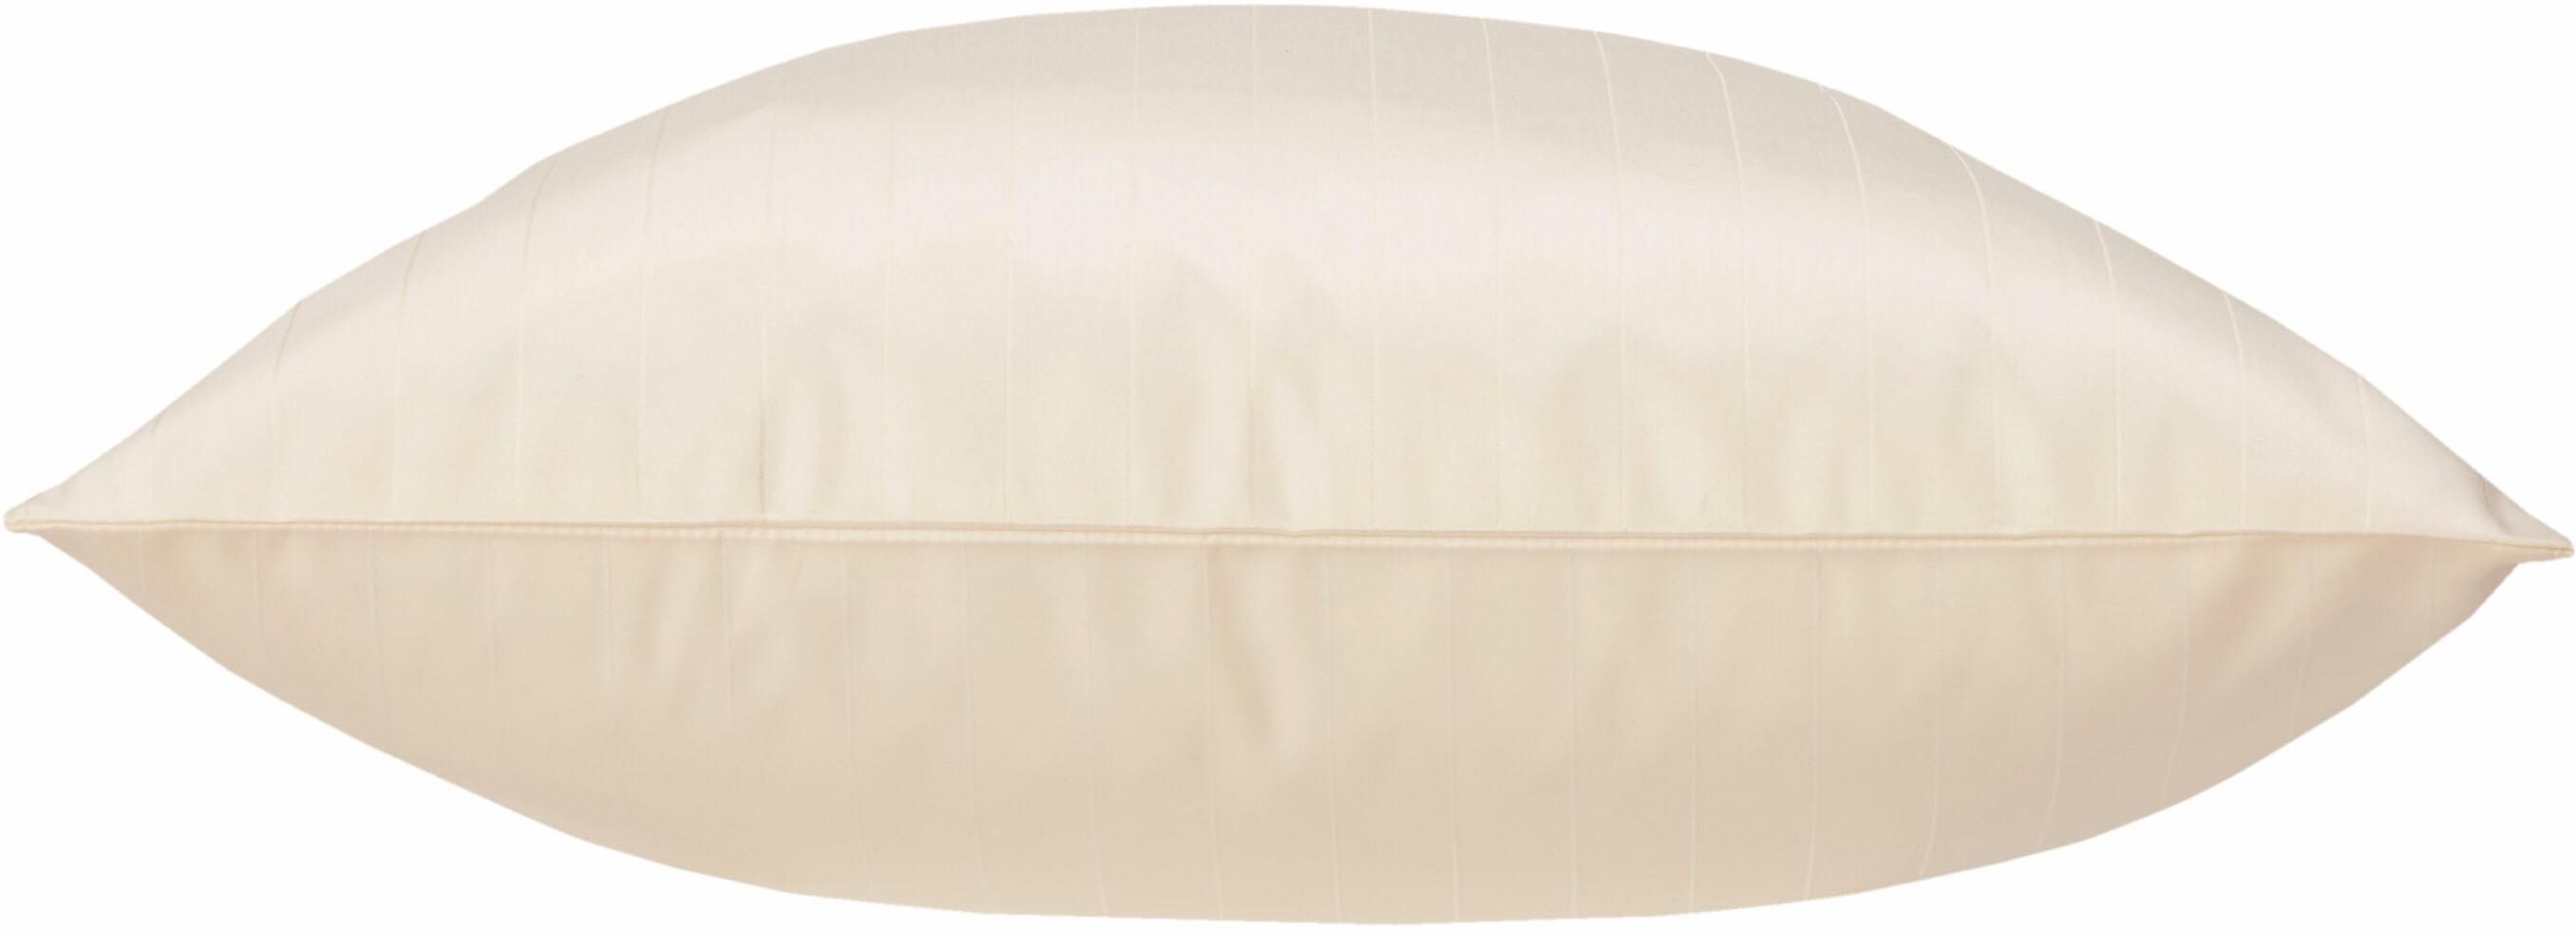 Curt Bauer Kissenbezug »Ferrara«, (1 St.), mit Nadelstreifen beige  1x 40x40 cm